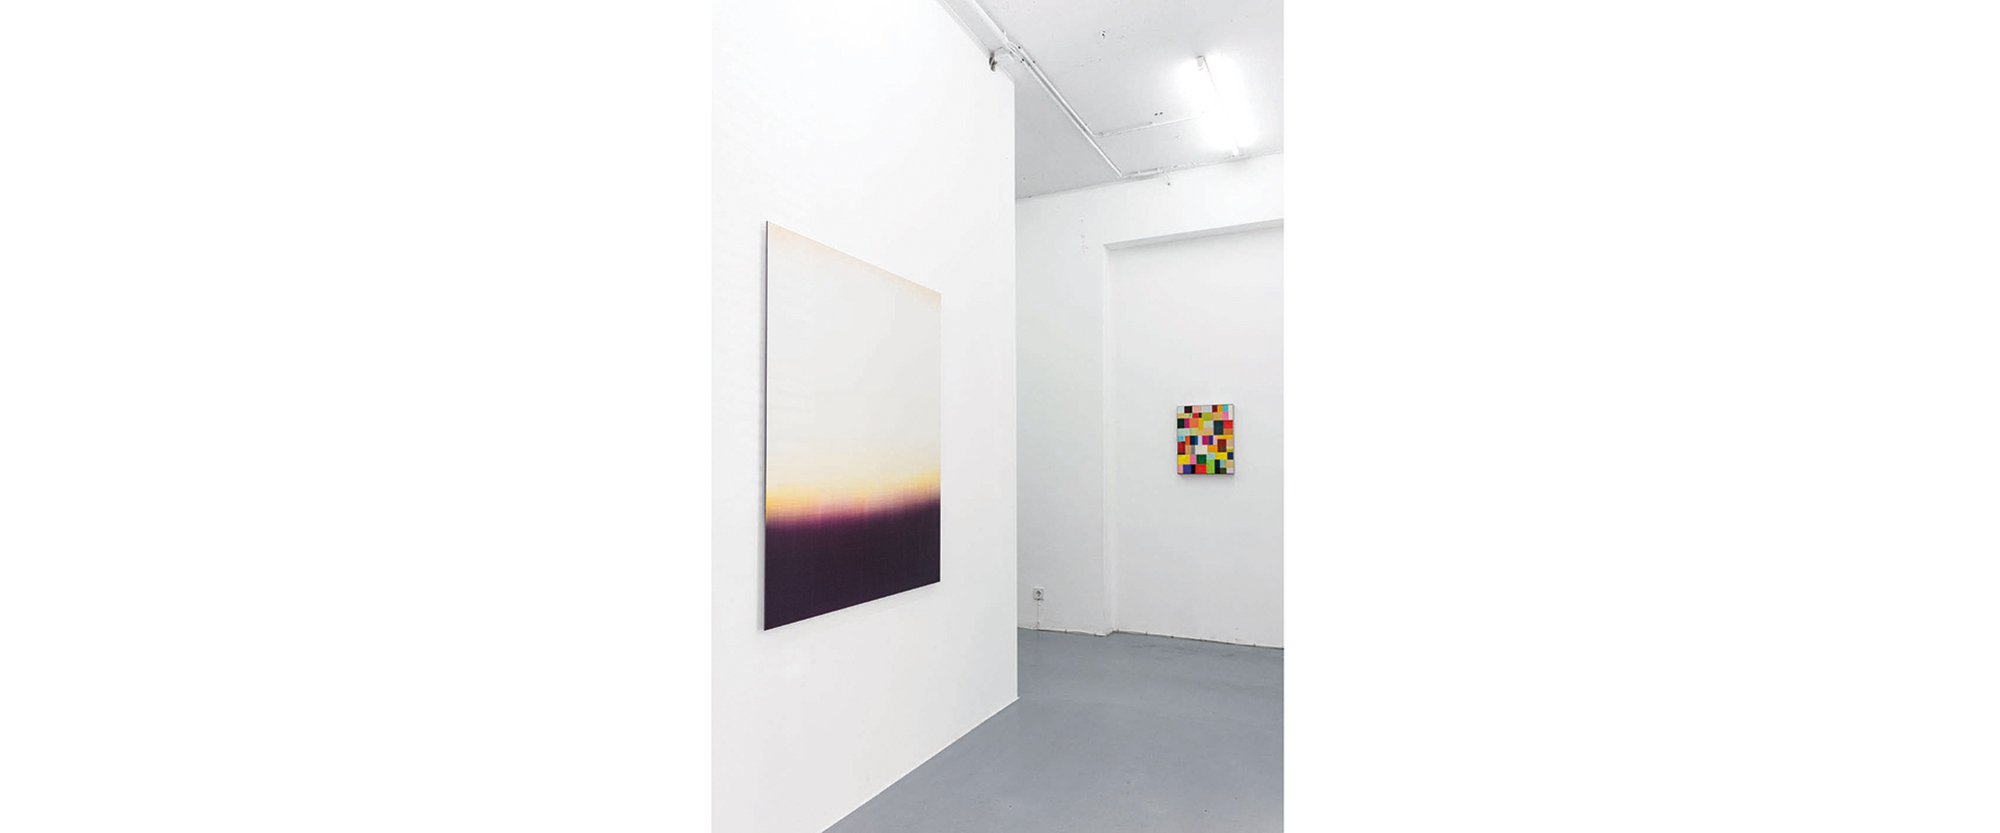 Ausstellungsansicht "Das Leben ist schön. Bim Koehler zum 70sten Geburtstag", Galerie Renate Bender, 2019